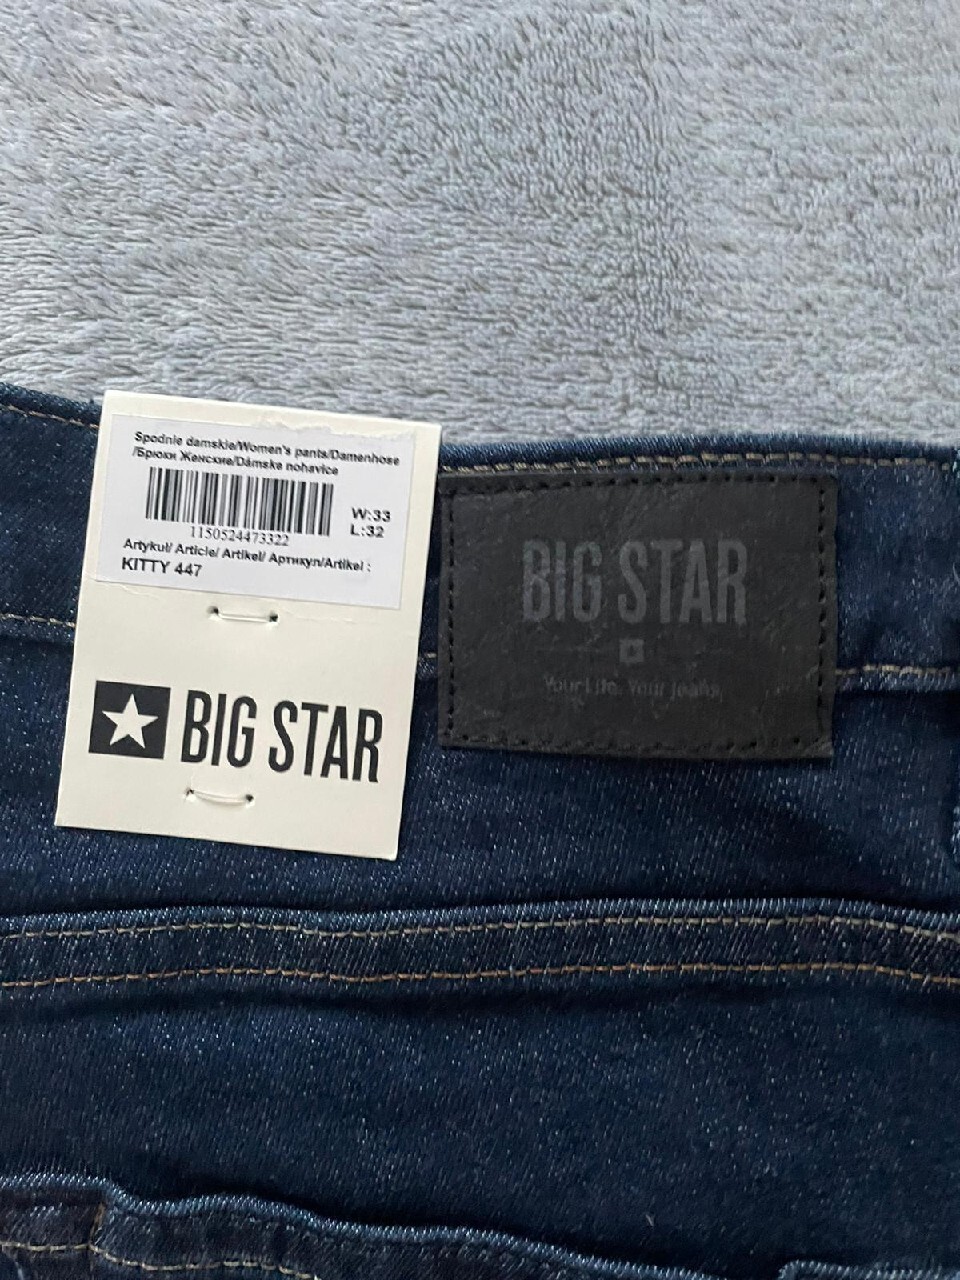 NOWE spodnie damskie Big Star Kitty 447 W33 L32 | WROCŁAW | Kup teraz na  Allegro Lokalnie